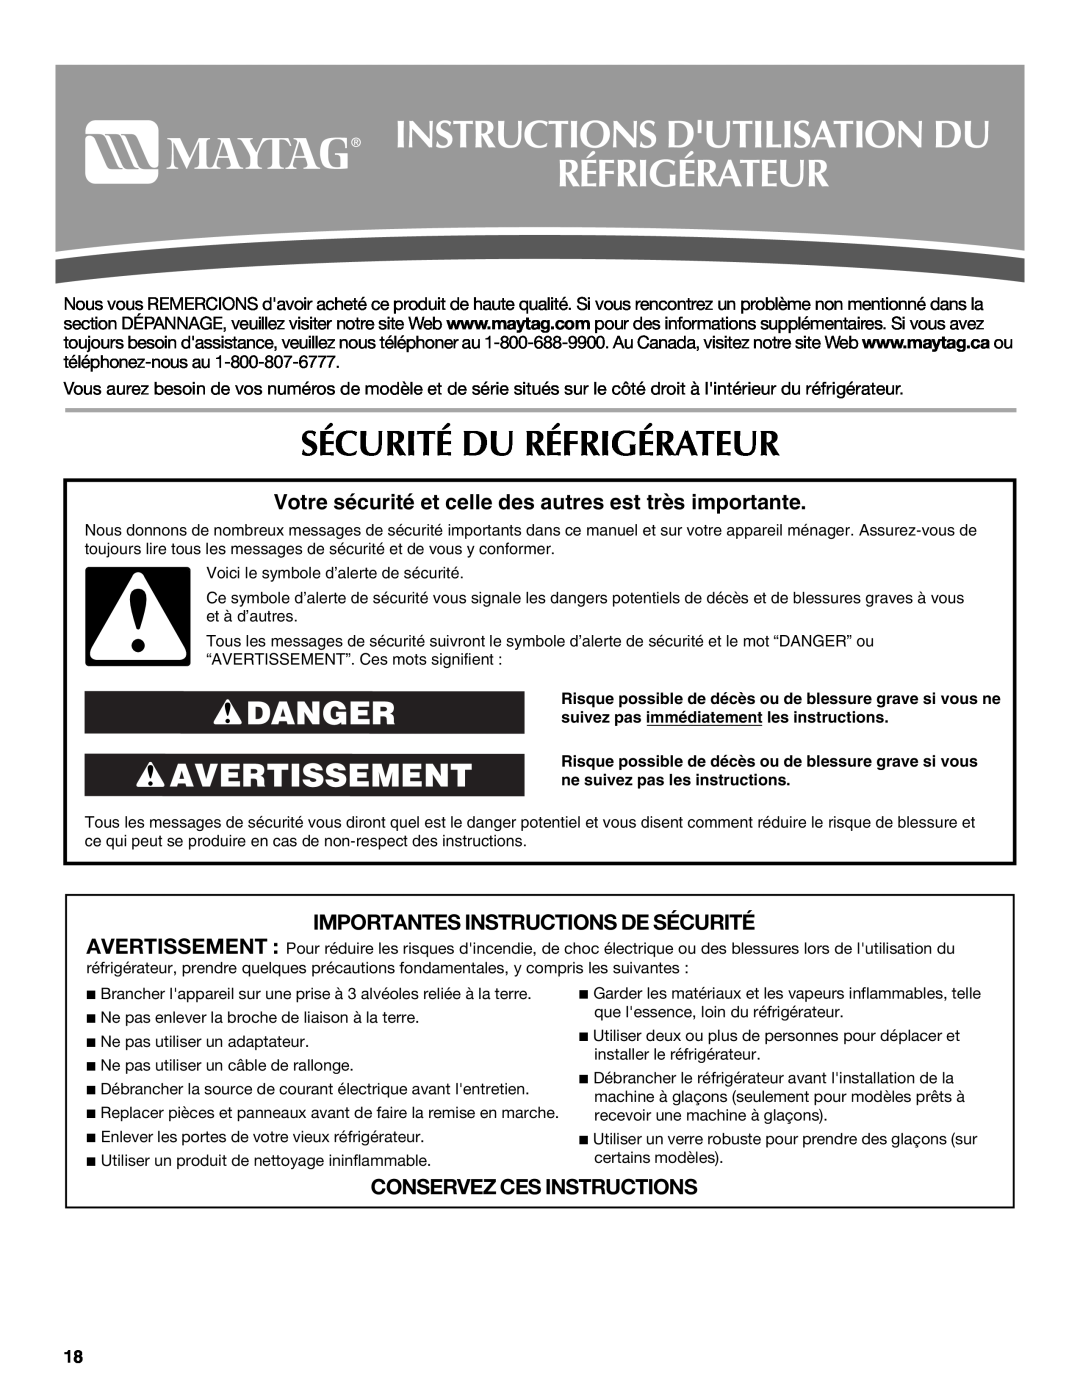 Maytag 12828190A, 12828186A Instructions Dutilisation Du Réfrigérateur, Sécurité Du Réfrigérateur, Danger Avertissement 